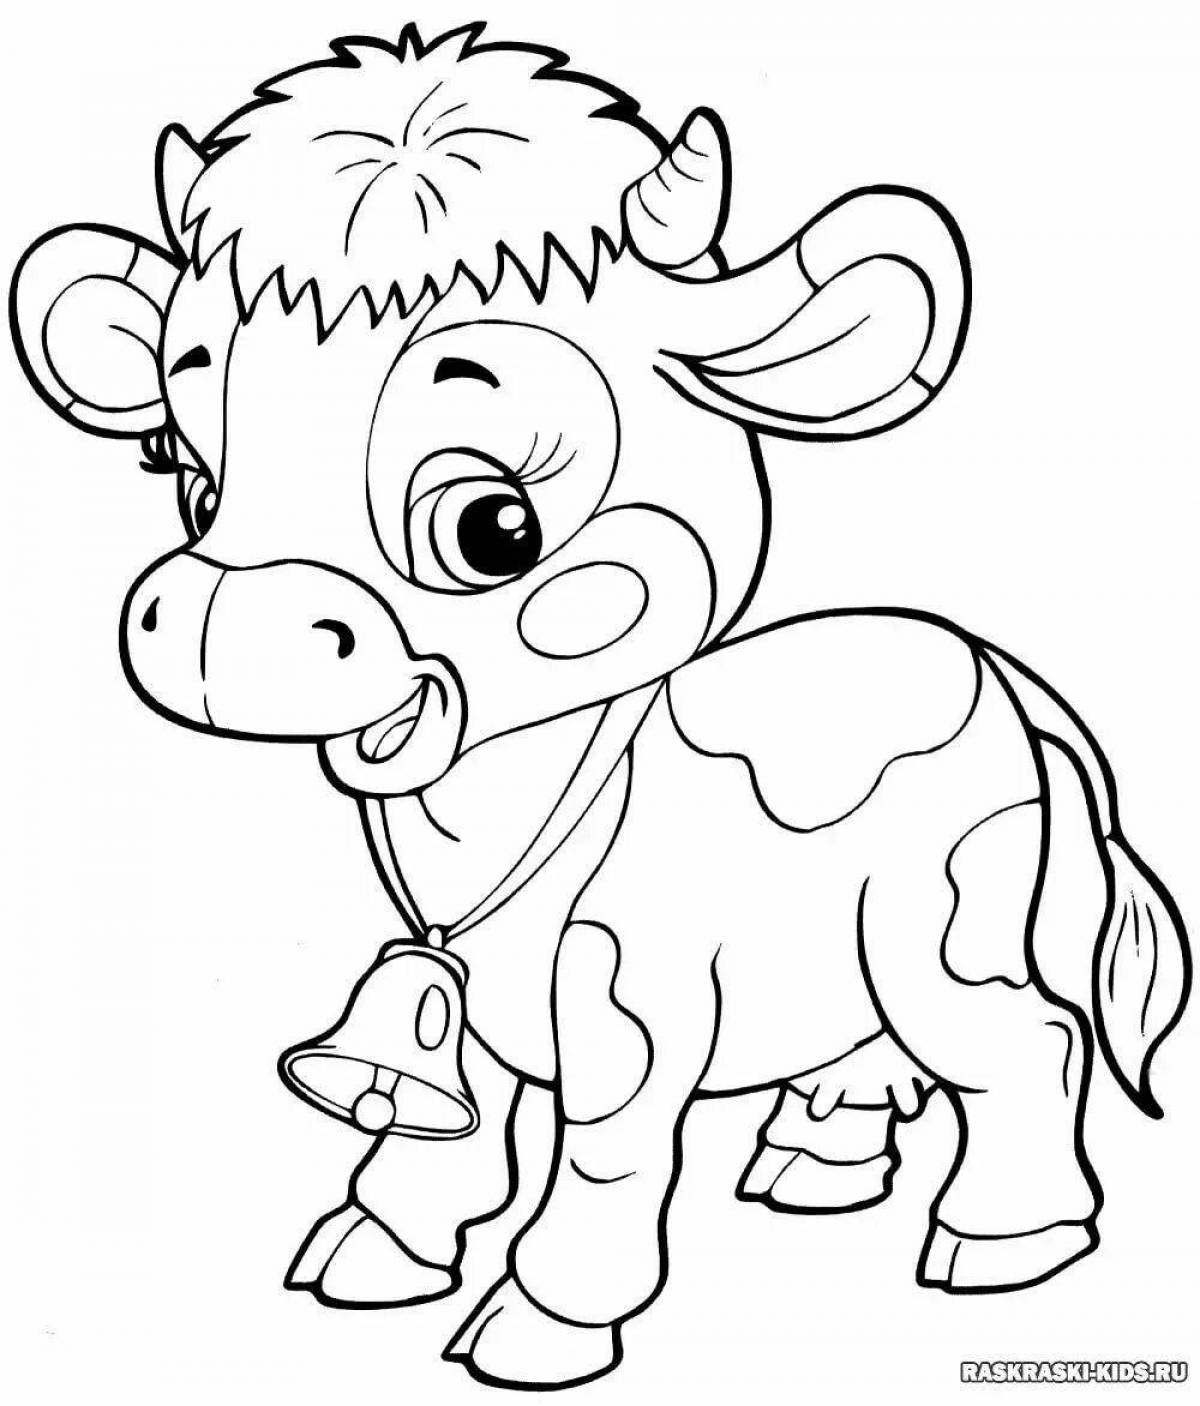 Юмористическая корова-раскраска для детей 4-5 лет